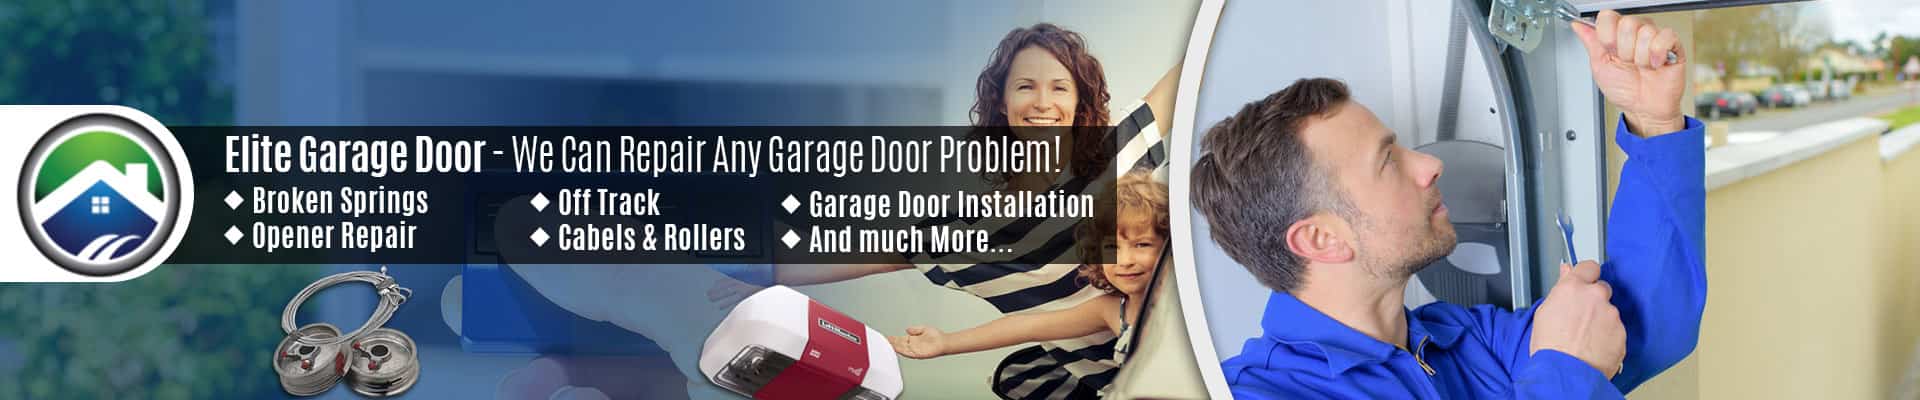 Garage Door Repair Service Arlington – Elite Garage Door of Camano Island 